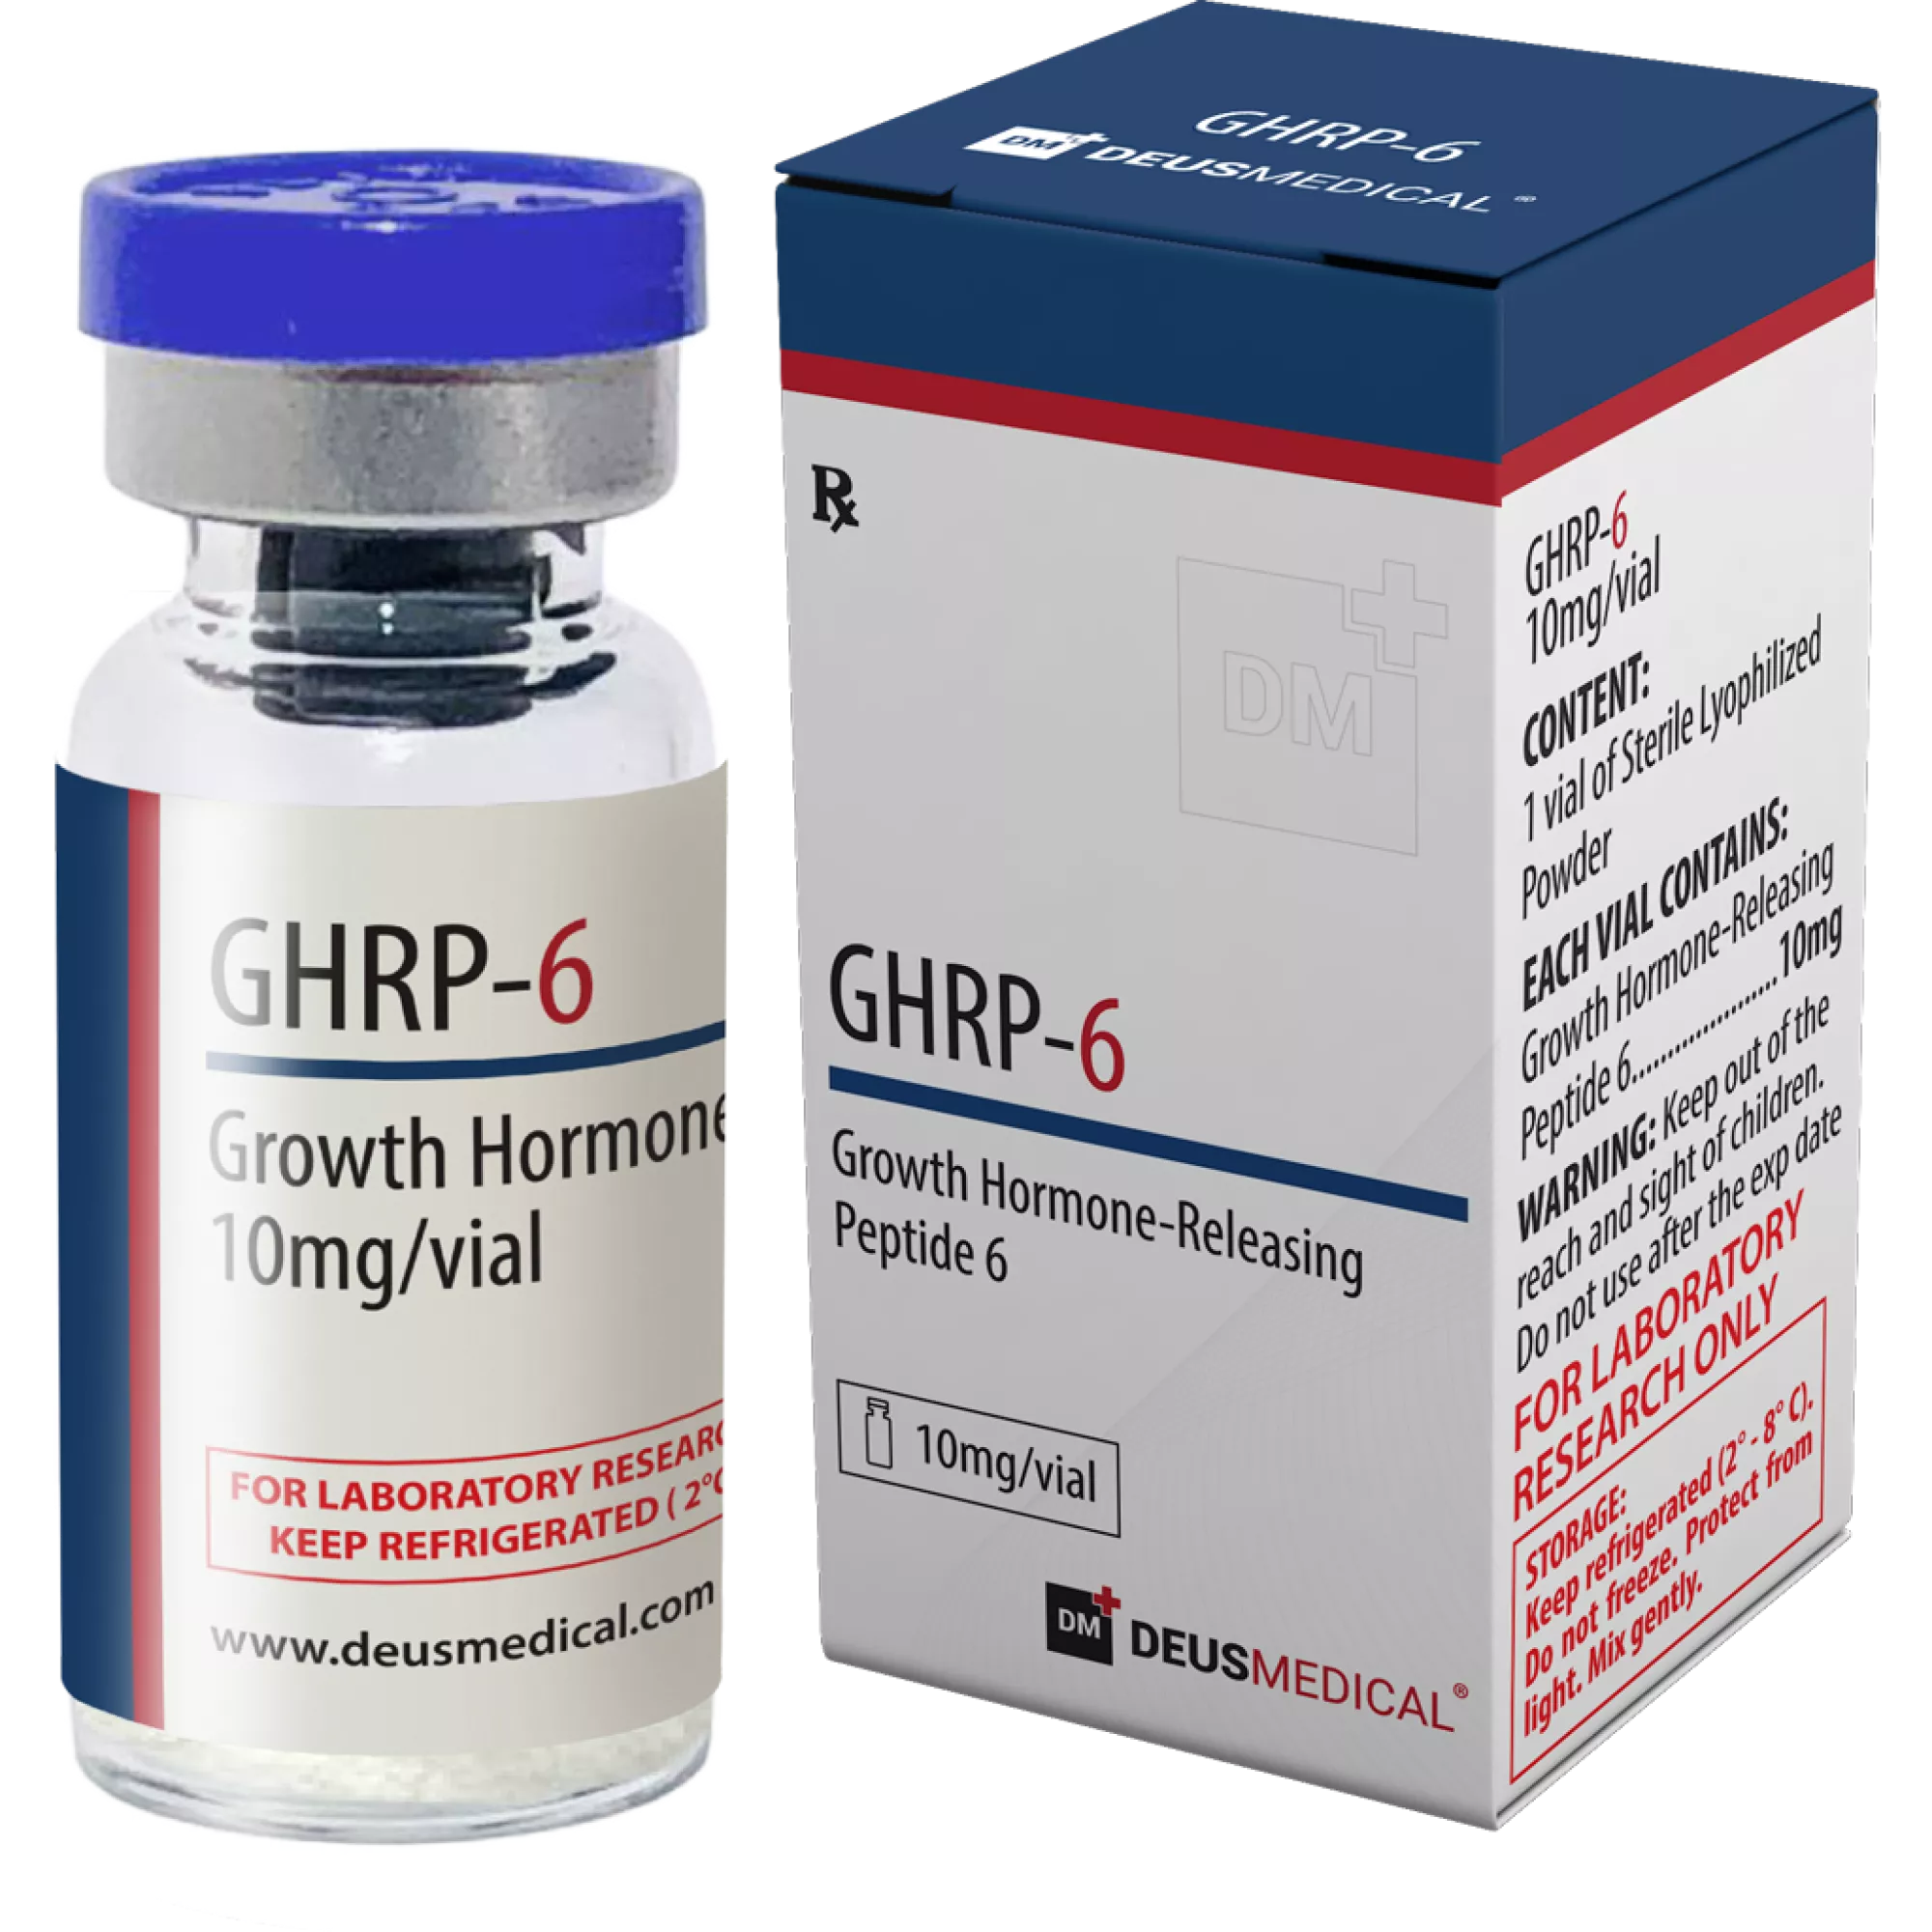 GHRP-6 (Growth Hormone-Releasing Peptide 6), Deus Medical, köp steroider online - www.deuspower.shop